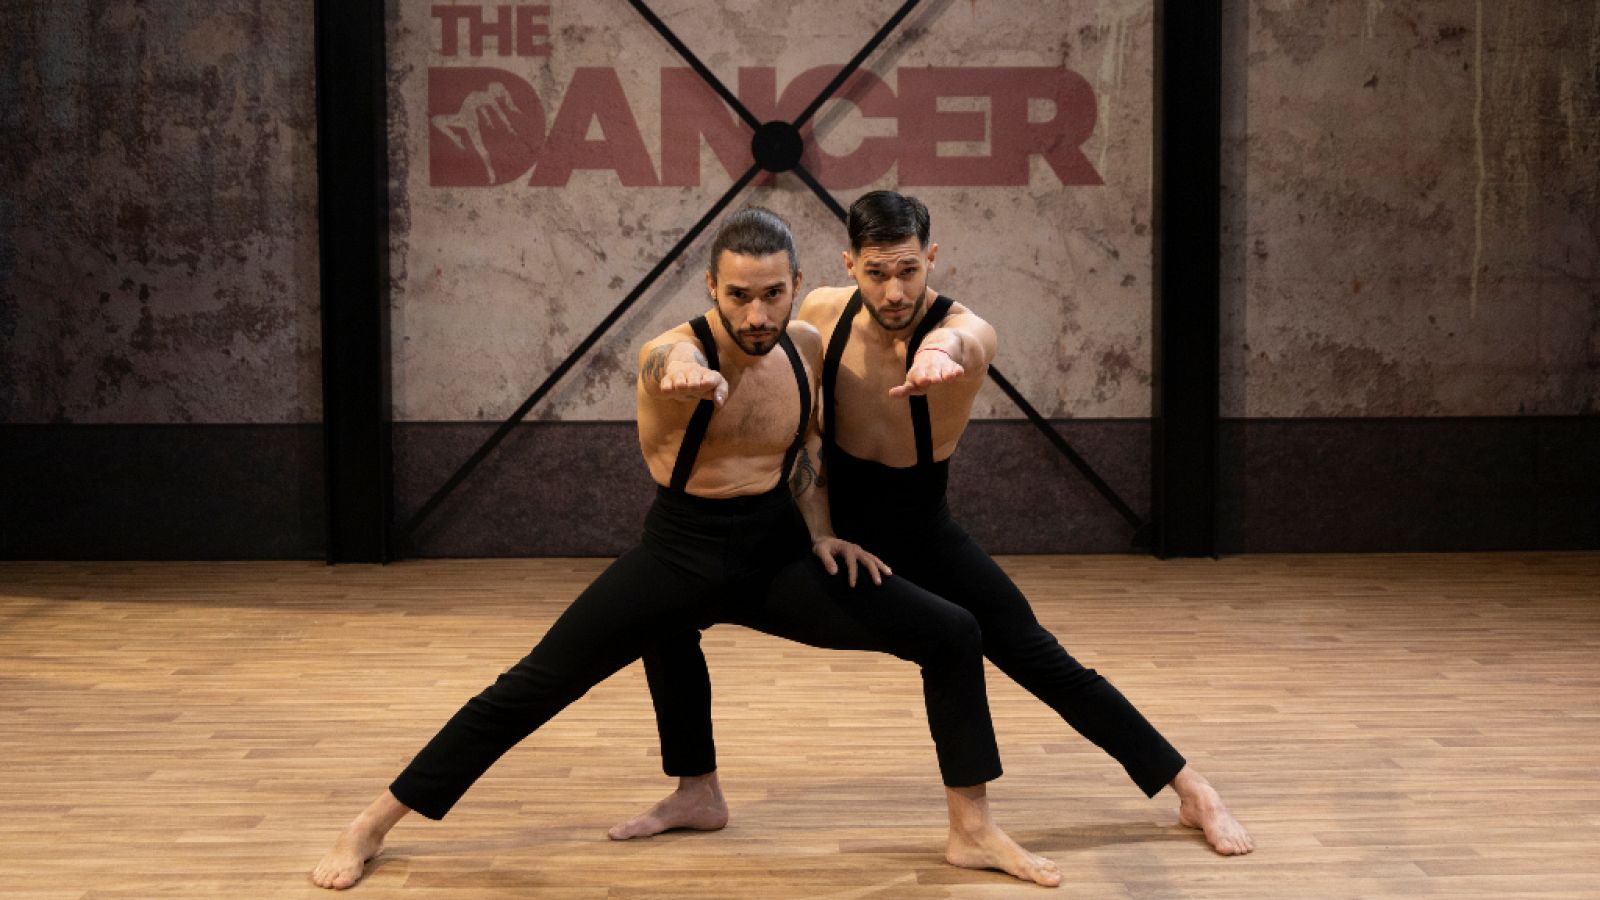 The Dancer - Alegato y actuación de Javier y Alexis